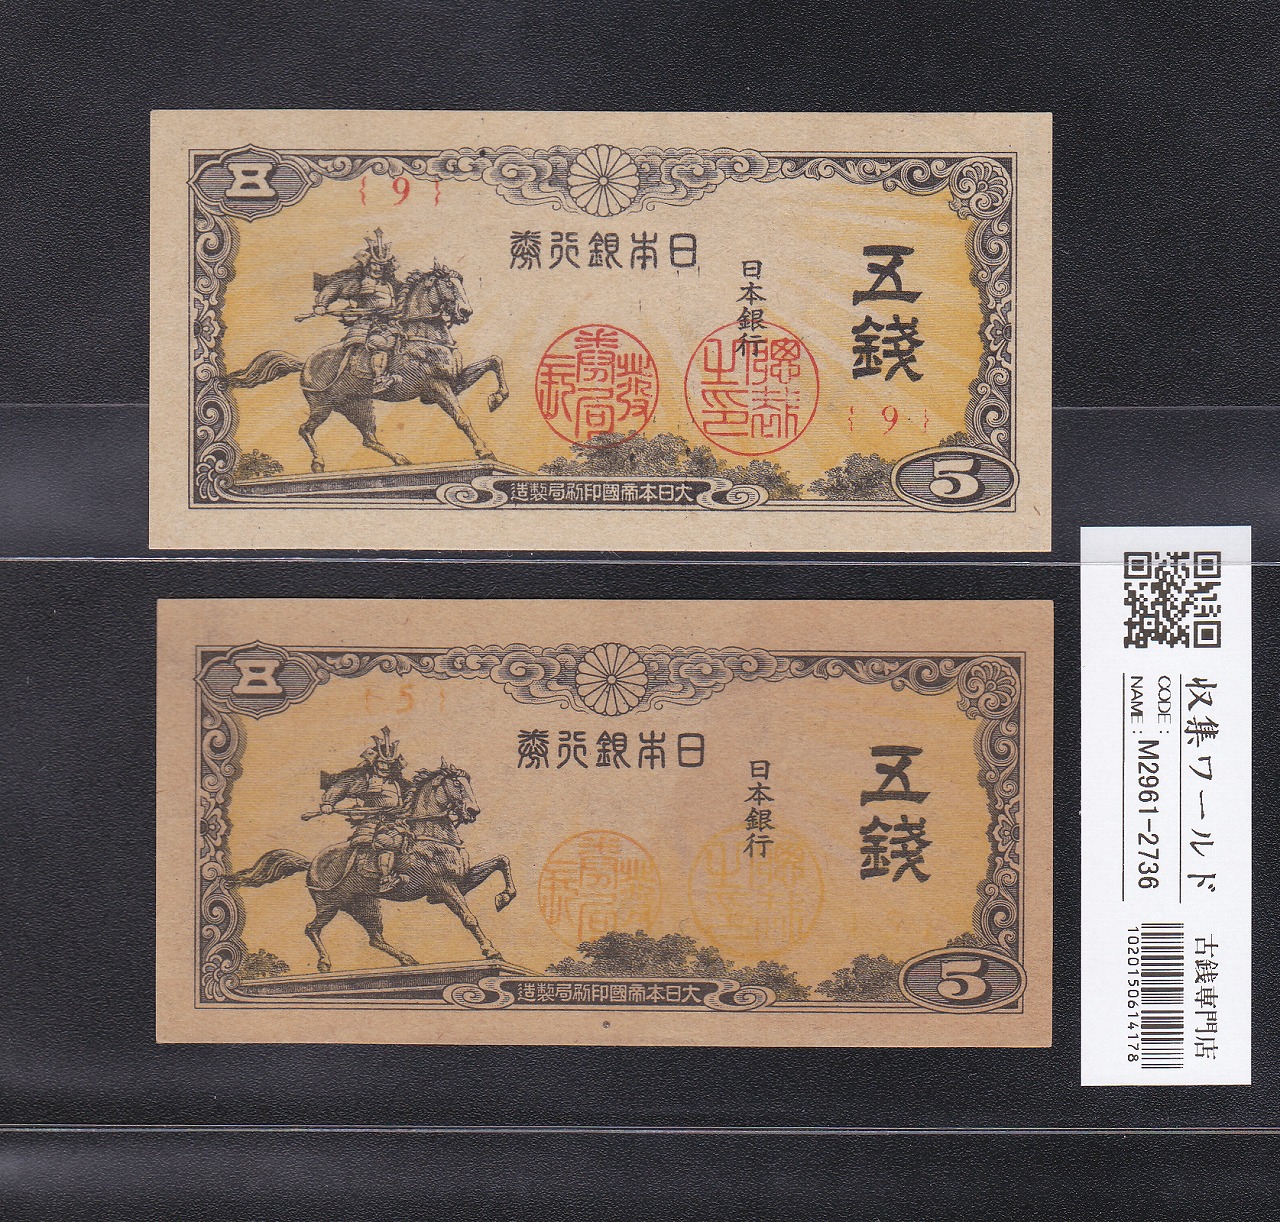 楠公 5銭 印刷エラー紙幣 日本銀行券 1944年 第5-9ロット 未使用2枚セット